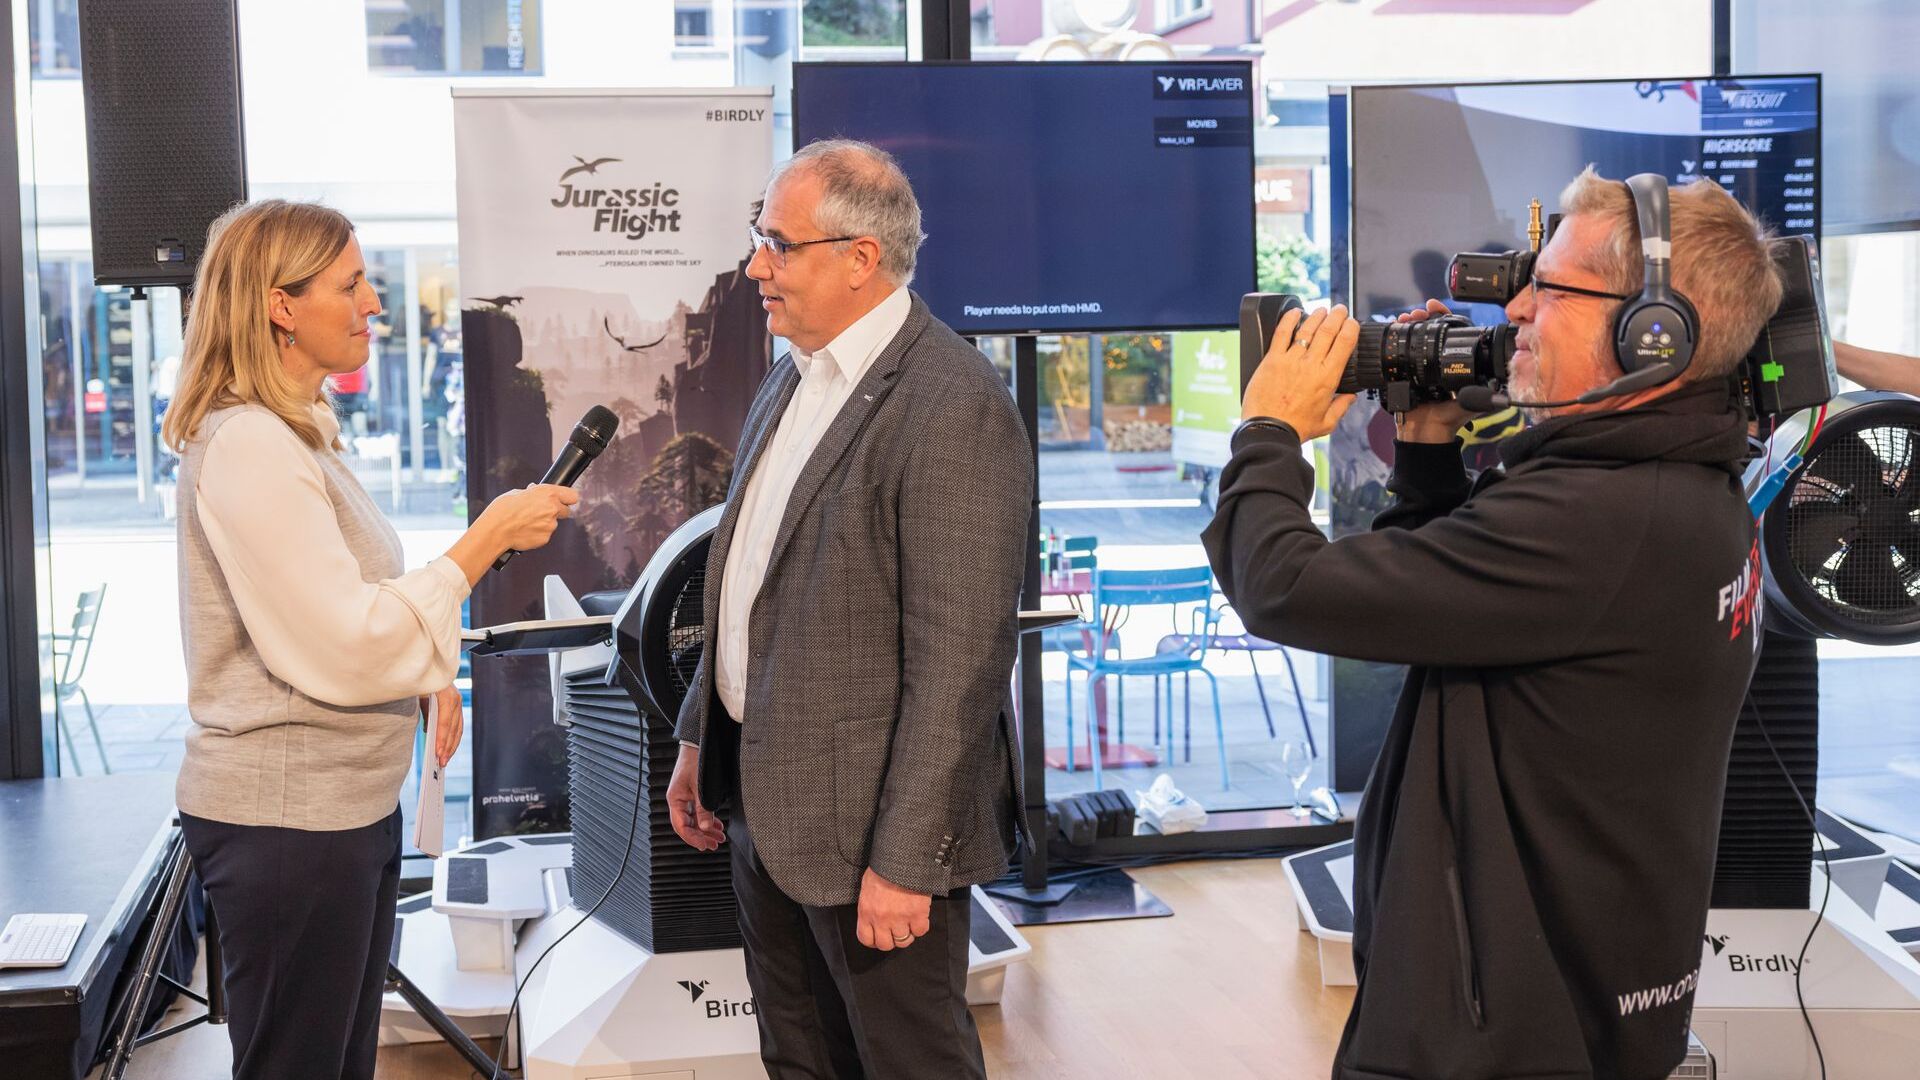 La “Digitaltag Vaduz”, accolta dal Kunstmuseum della capitale del Principato del Liechtenstein sabato 6 novembre 2021, ha suscitato l’entusiasmo di pubblico e relatori in analogia con la “Giornata Digitale Svizzera” del successivo giorno 10: intervista a Manfred Bischof, Sindaco della capitale